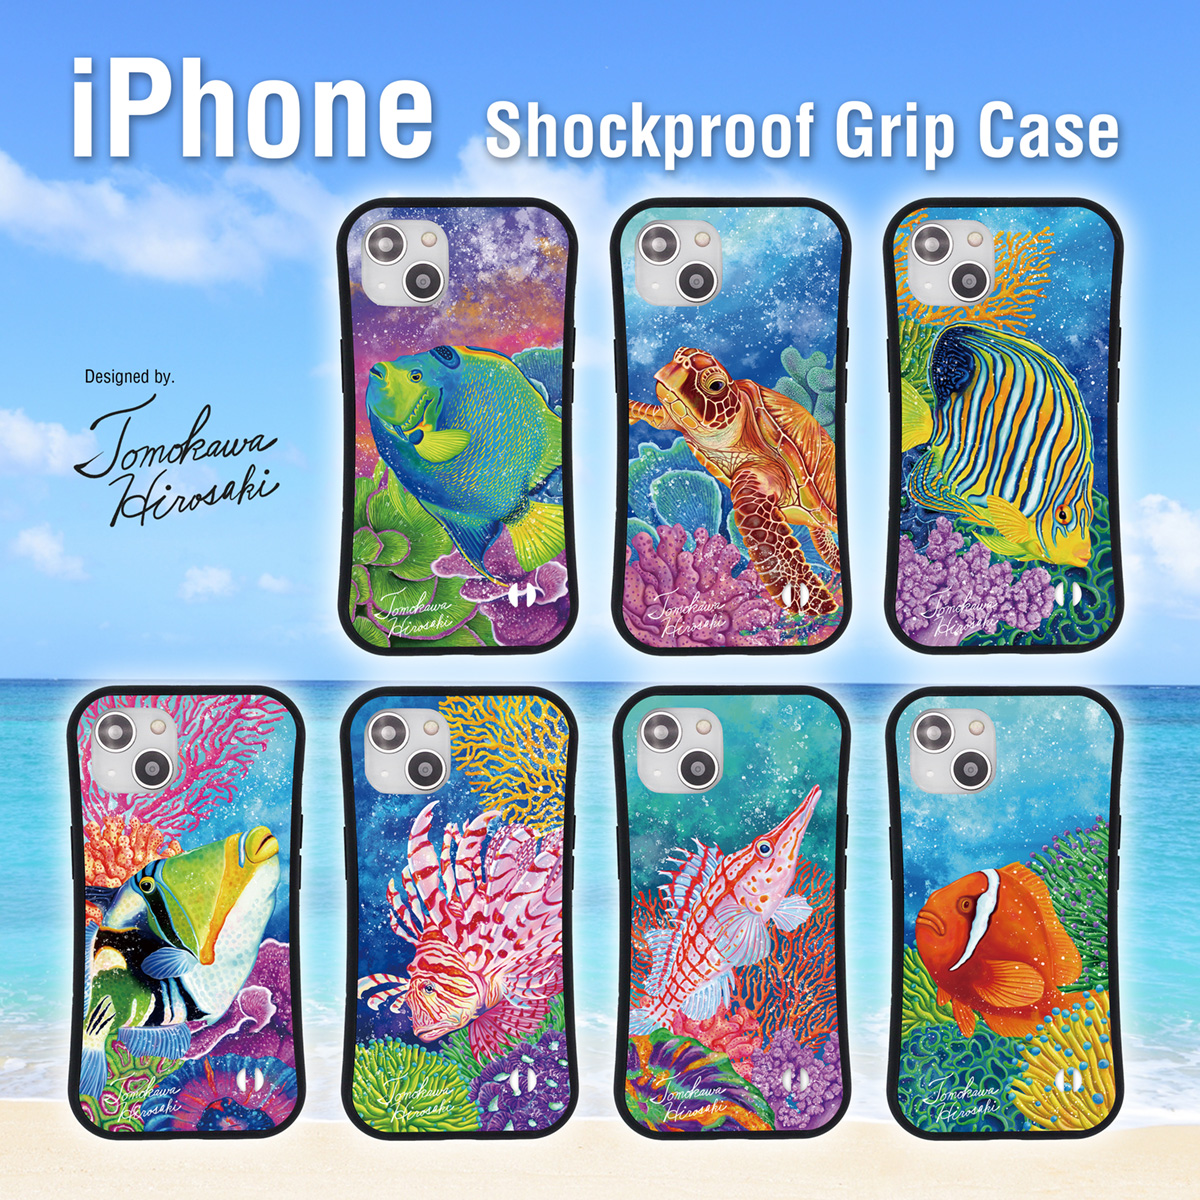 海の生き物をデザインした耐衝撃iPhoneケースを新しく7種類新発売しました！